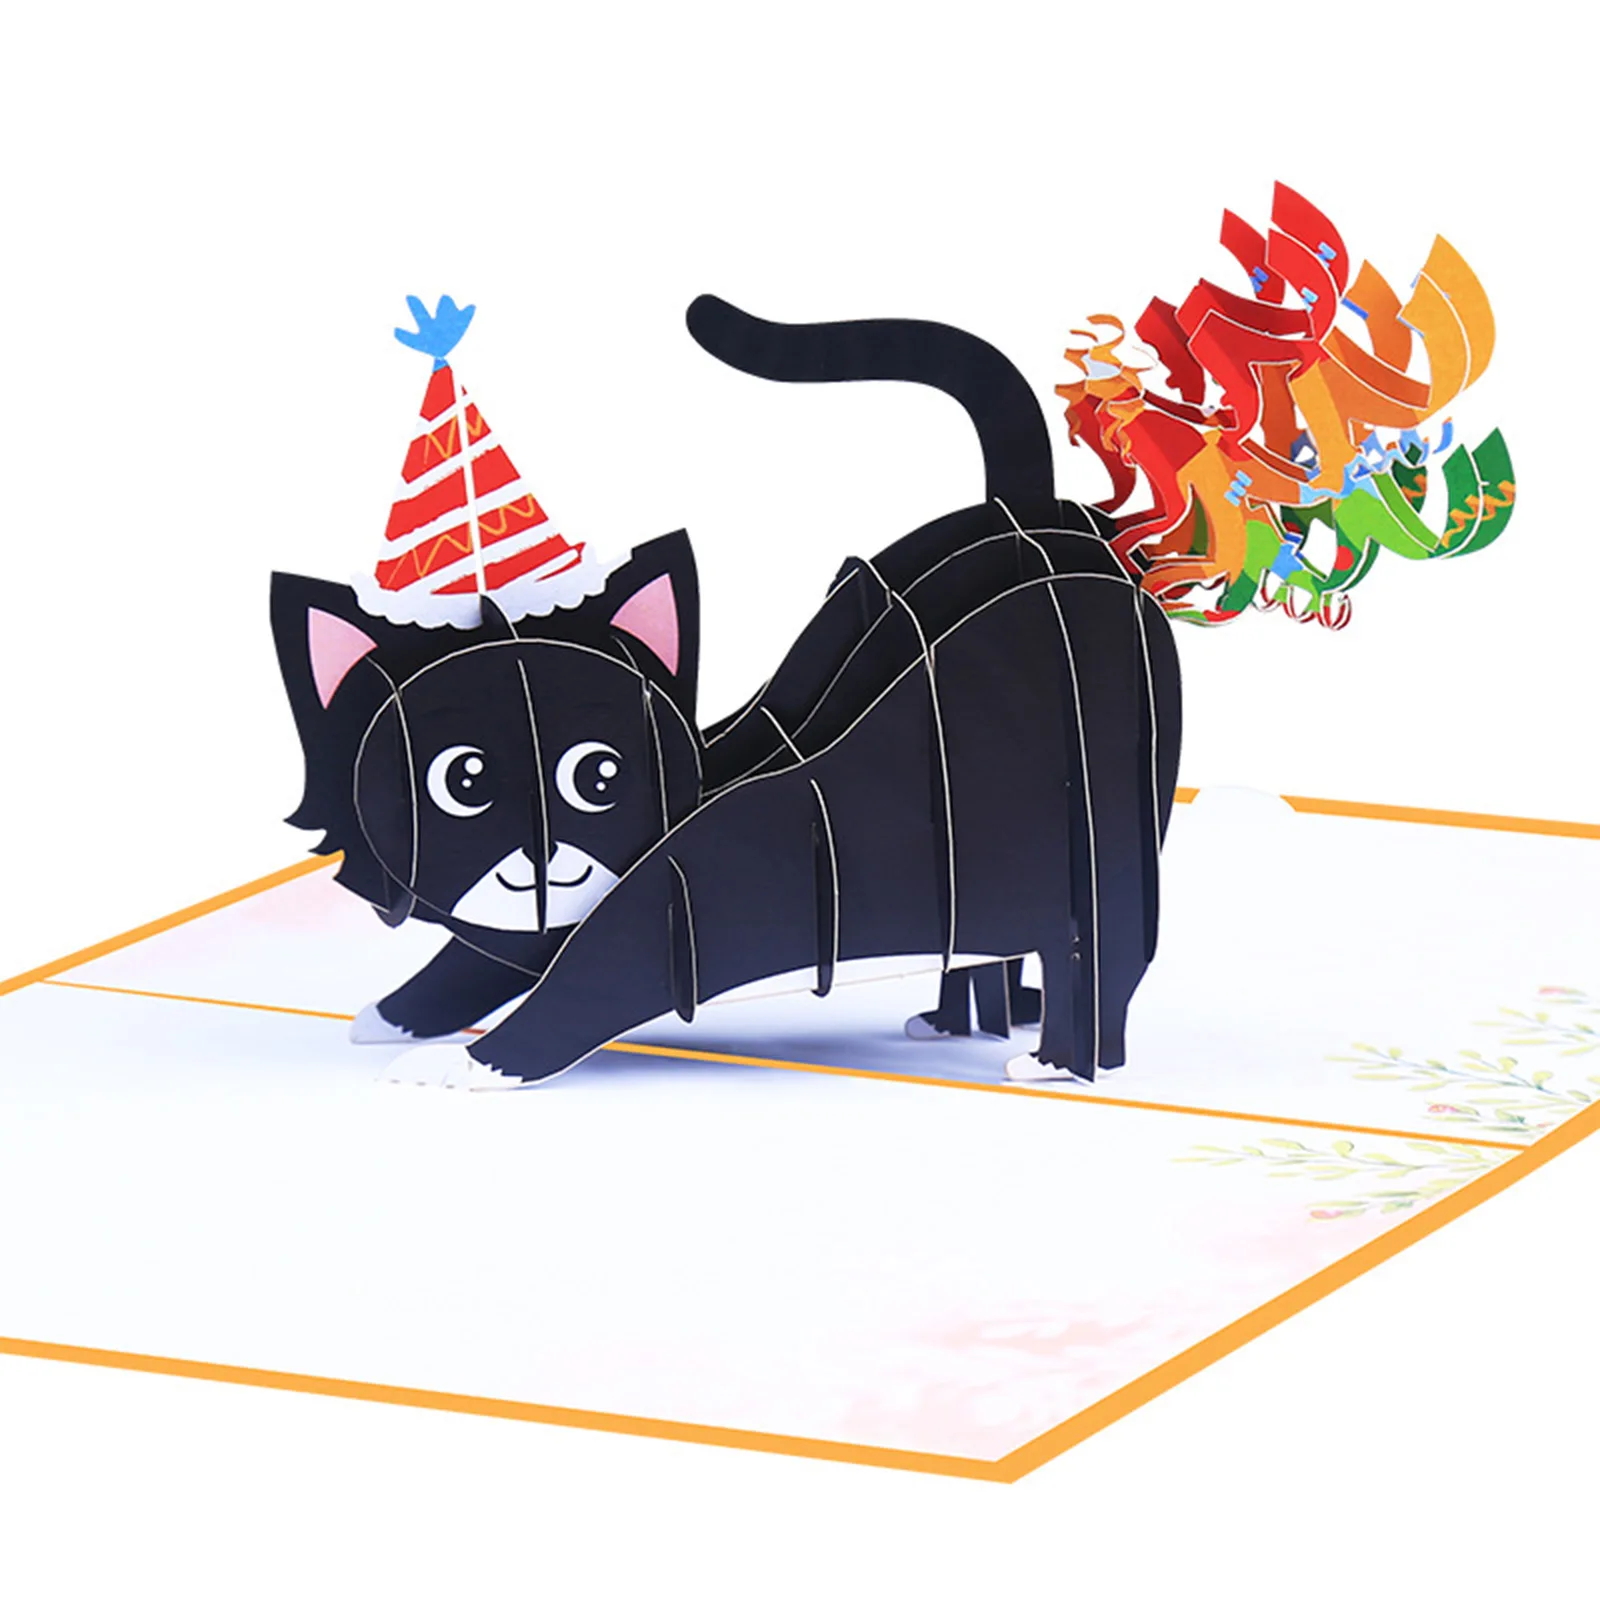 

1 шт. 5x7 дюймов 3D конверты, поздравительные открытки, непревзойденная открытка на день рождения, черная кошка, открытки с конвертом, взрывной смех, влюбленные, поздравительные